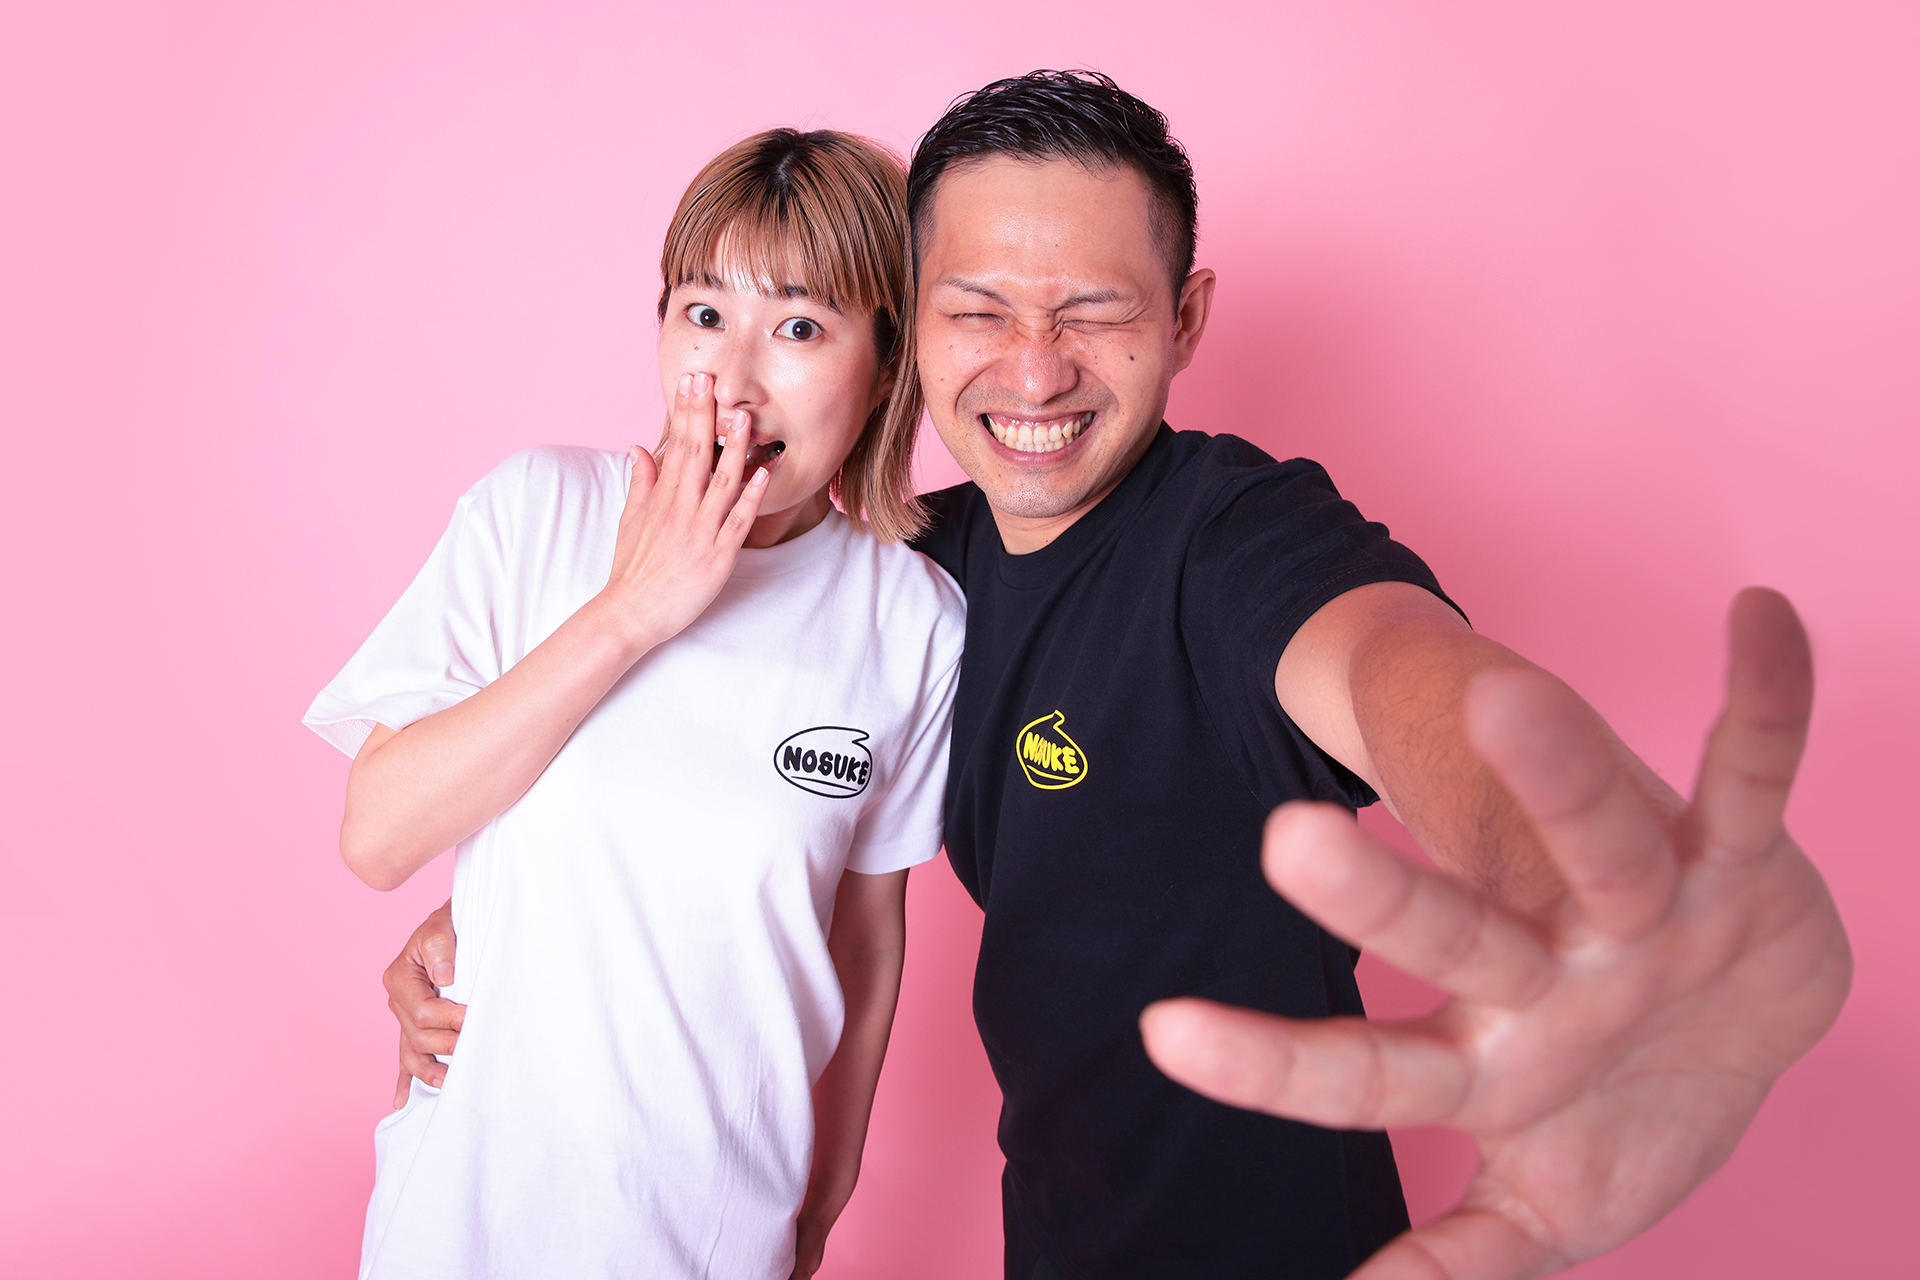 【ポップ&かわいい】NOSUKEオリジナルロゴ「6NOSUKE」Tシャツ発売中!!